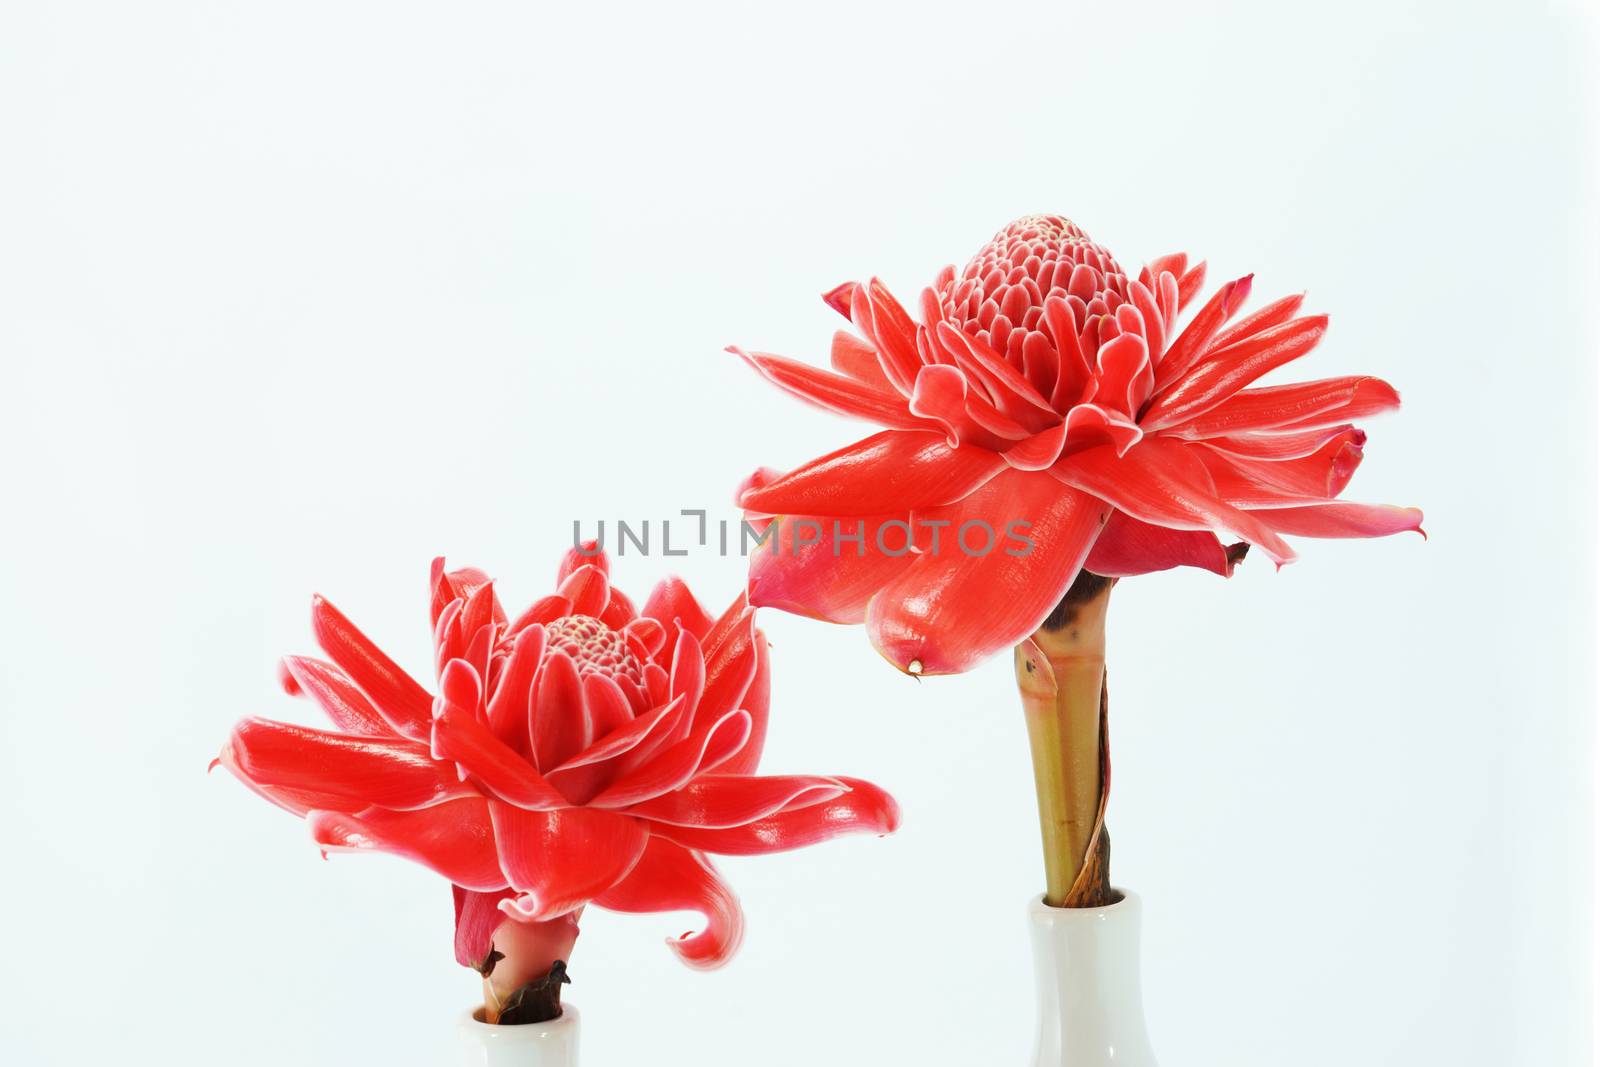 Tropical flower of Pink torch ginger. (Etlingera elatior (Jack) R.M. Sm.)